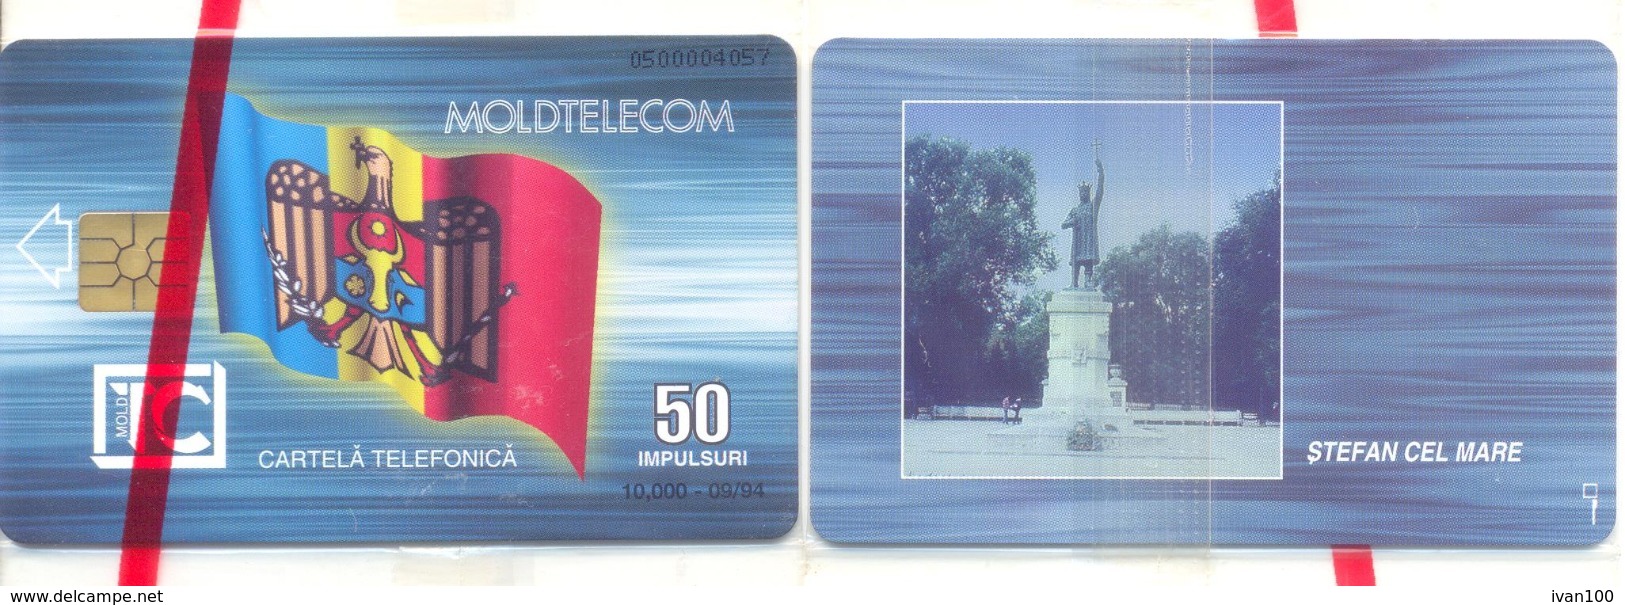 1994. Moldova - CHIP - 50 IMP, 09/1994, RR BLISTER - Moldova